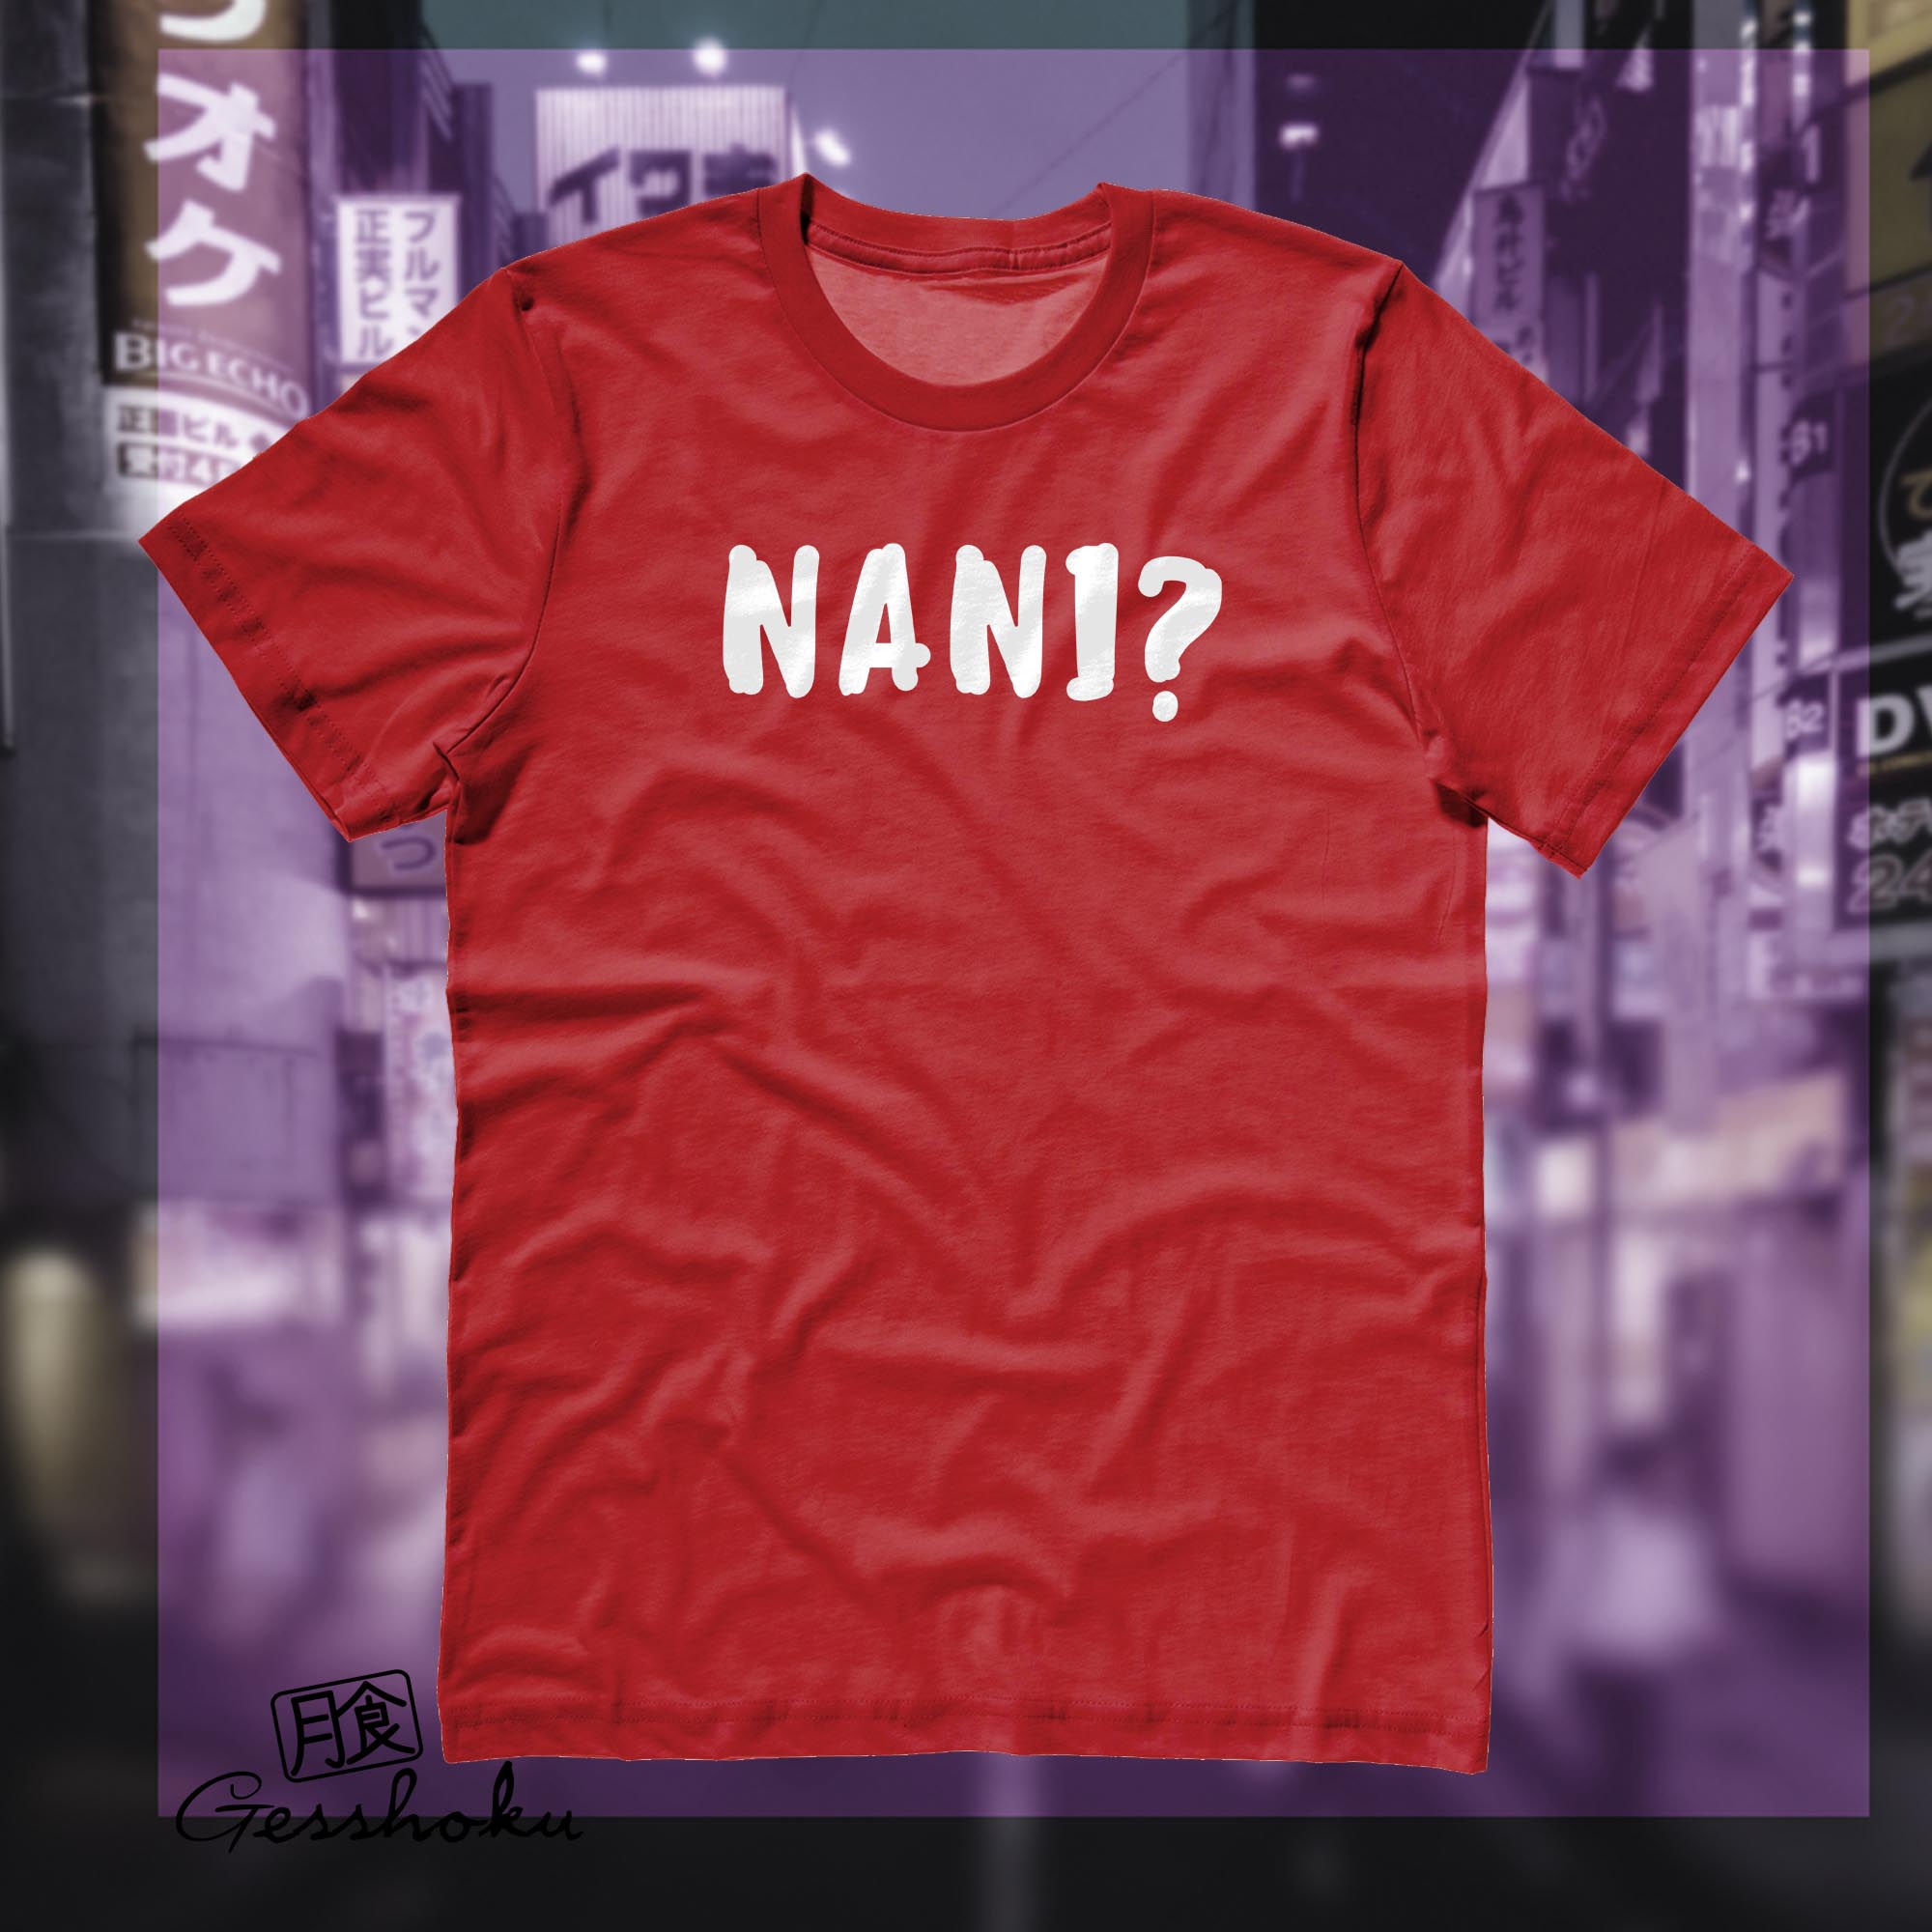 Nani? T-shirt (text version) - Red